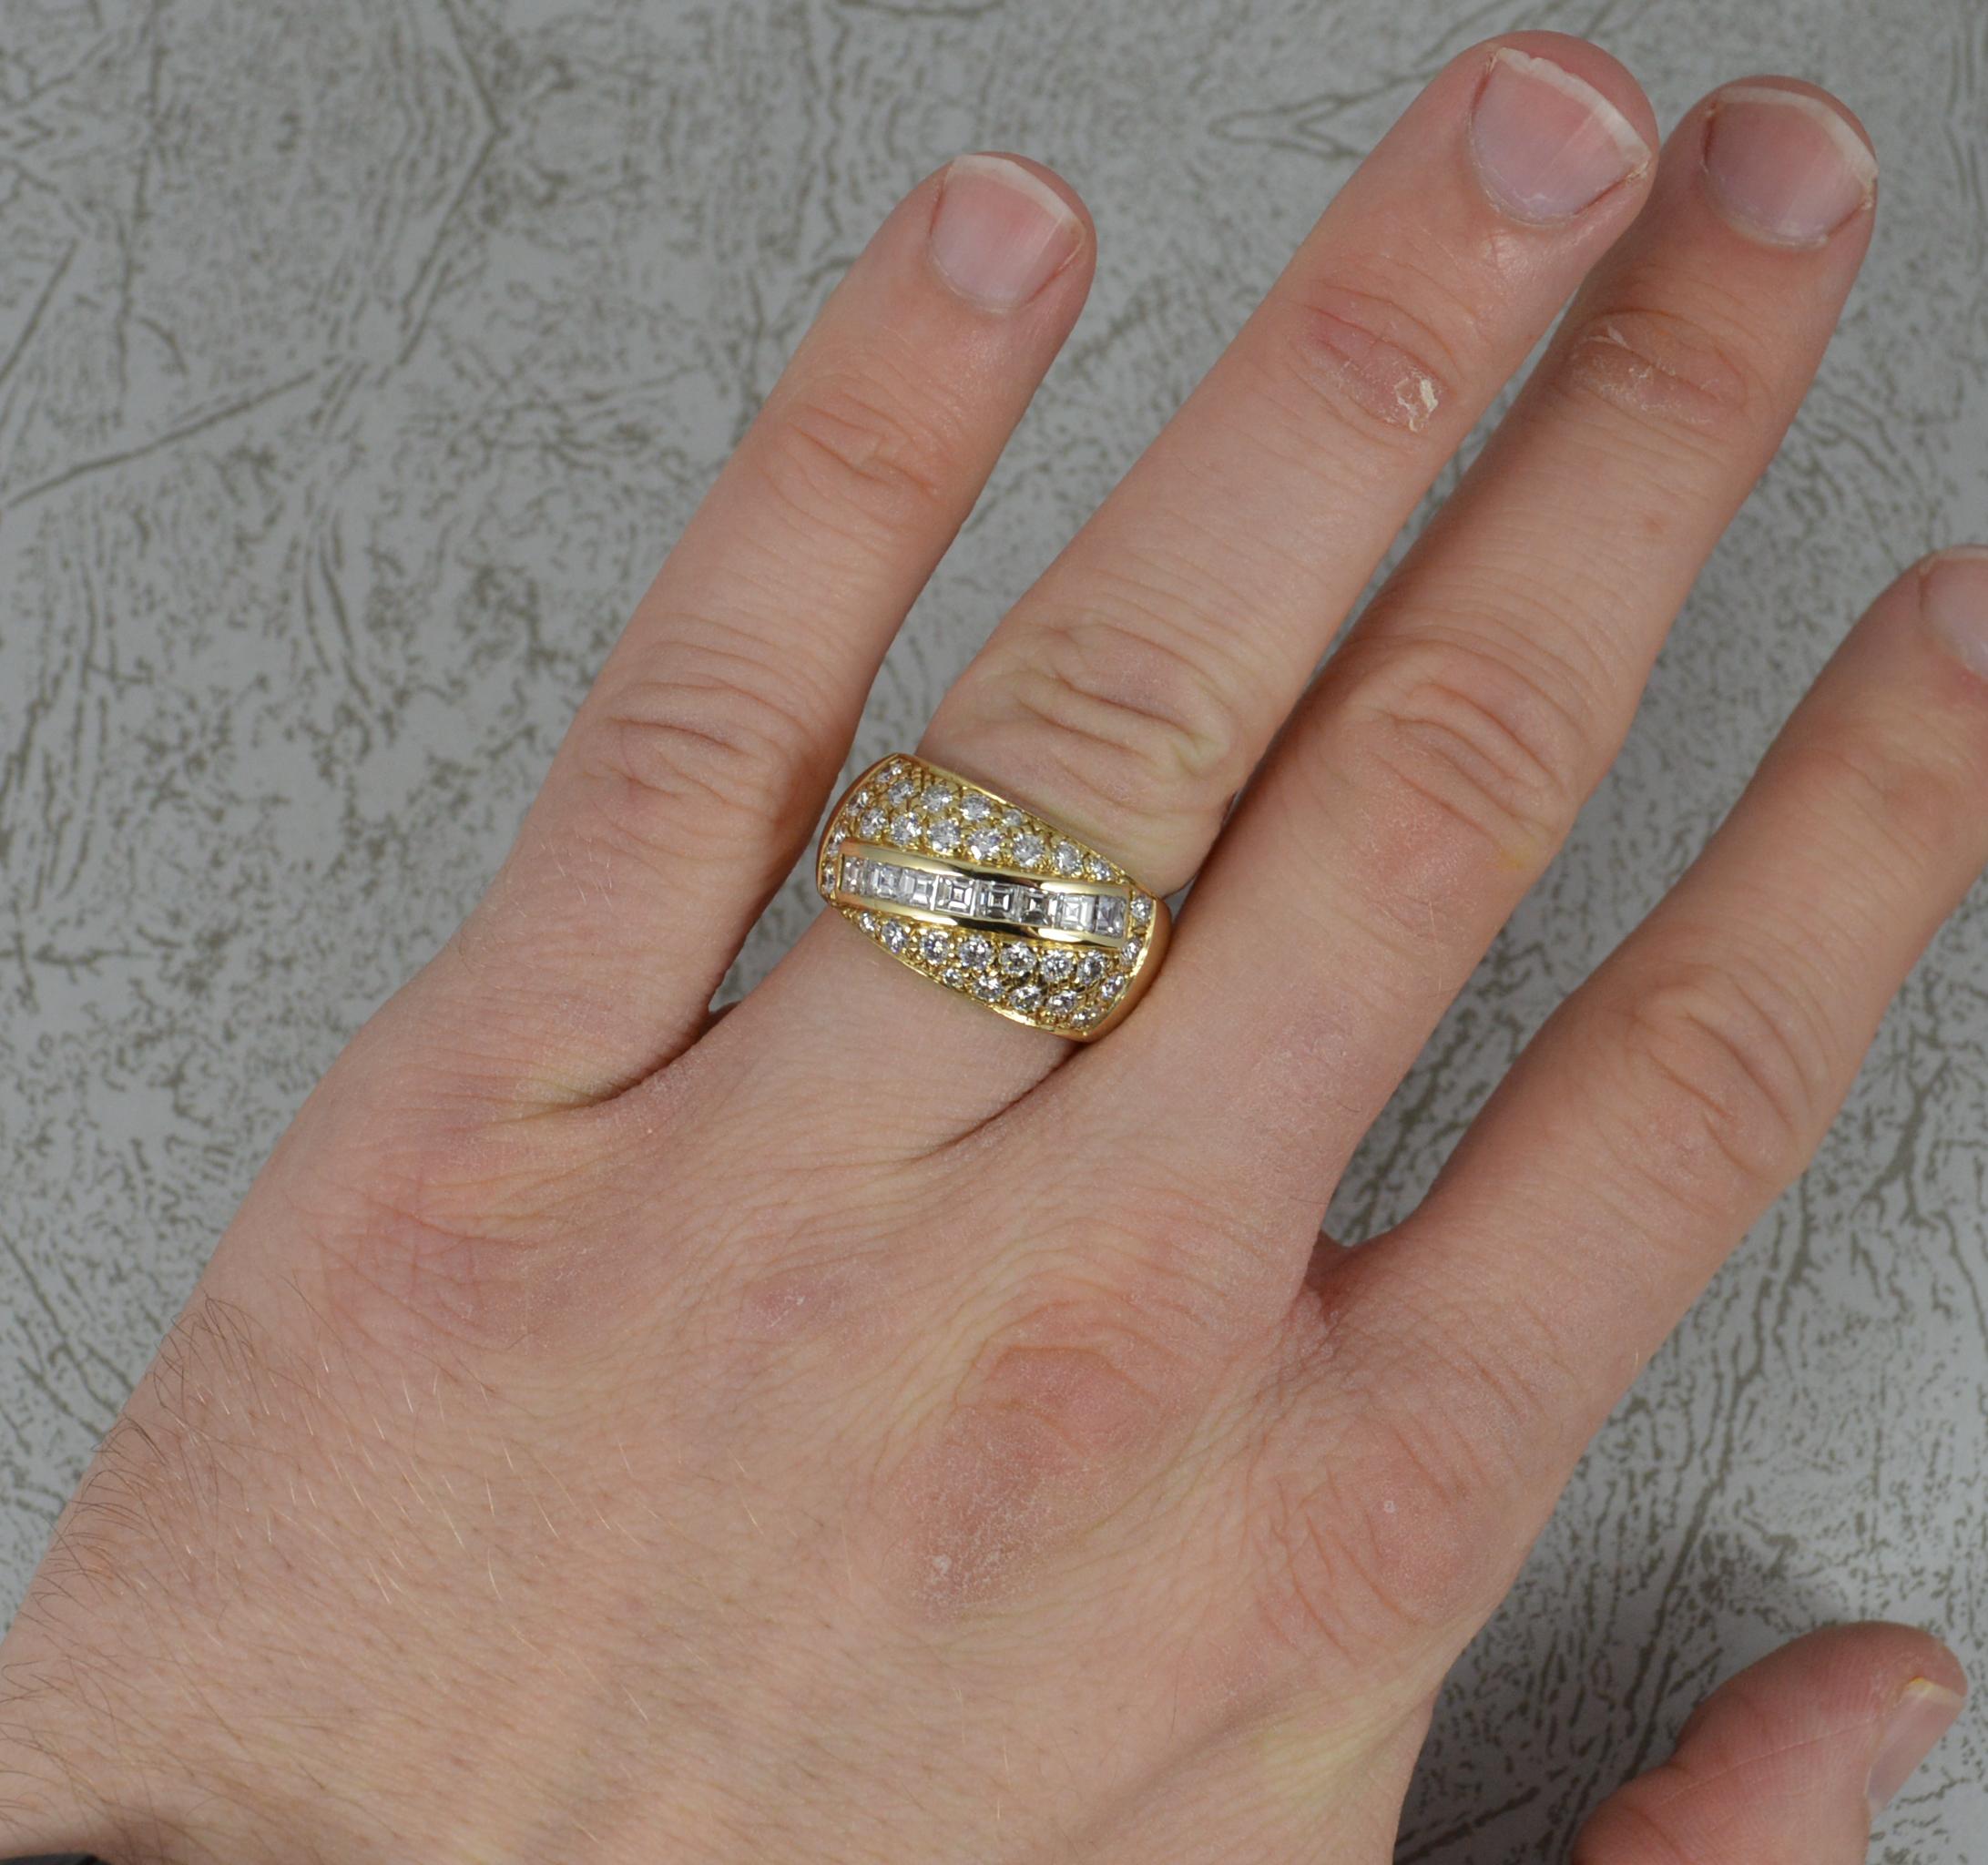 Ein sehr auffälliger Ring aus 14 Karat Gold und Diamanten.
Ein größerer, bombenartiger, geglätteter Clusterkopf.
Bestehend aus vielen natürlichen Diamanten mit einer diagonalen Linie aus Diamanten im Karree-Schliff und vielen runden Diamanten im